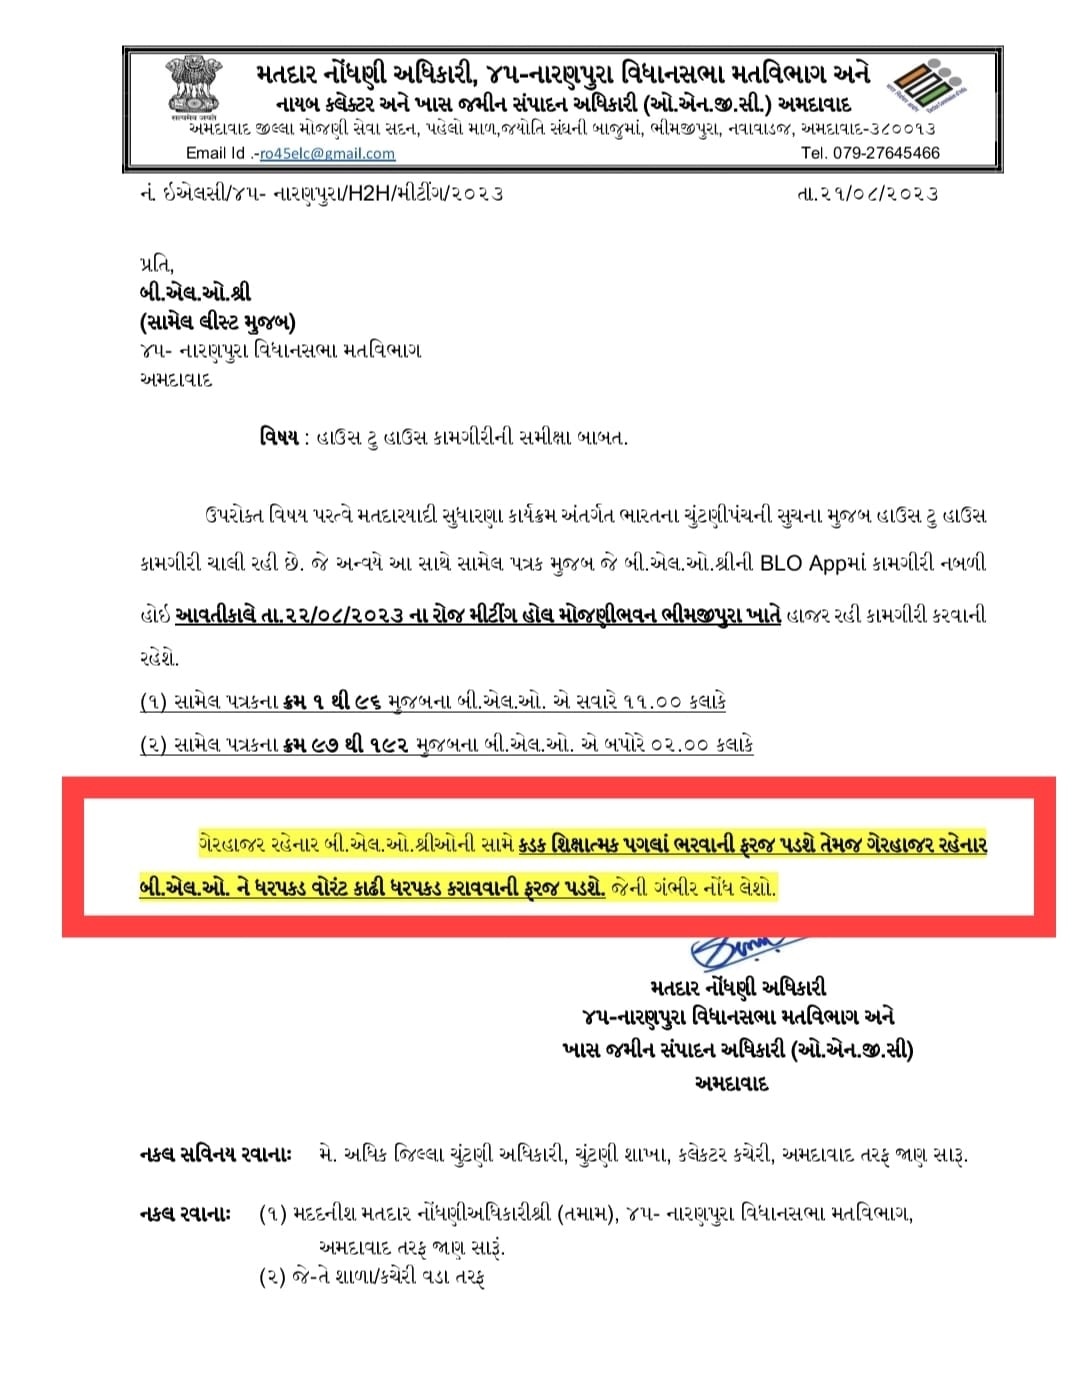 Ahmedabad News: શિક્ષકો BLOની કામગીરીમાં નહીં જોડાય તો ધરપકડની ધમકી, અધિકારીના પત્રથી વિવાદની શક્યતા